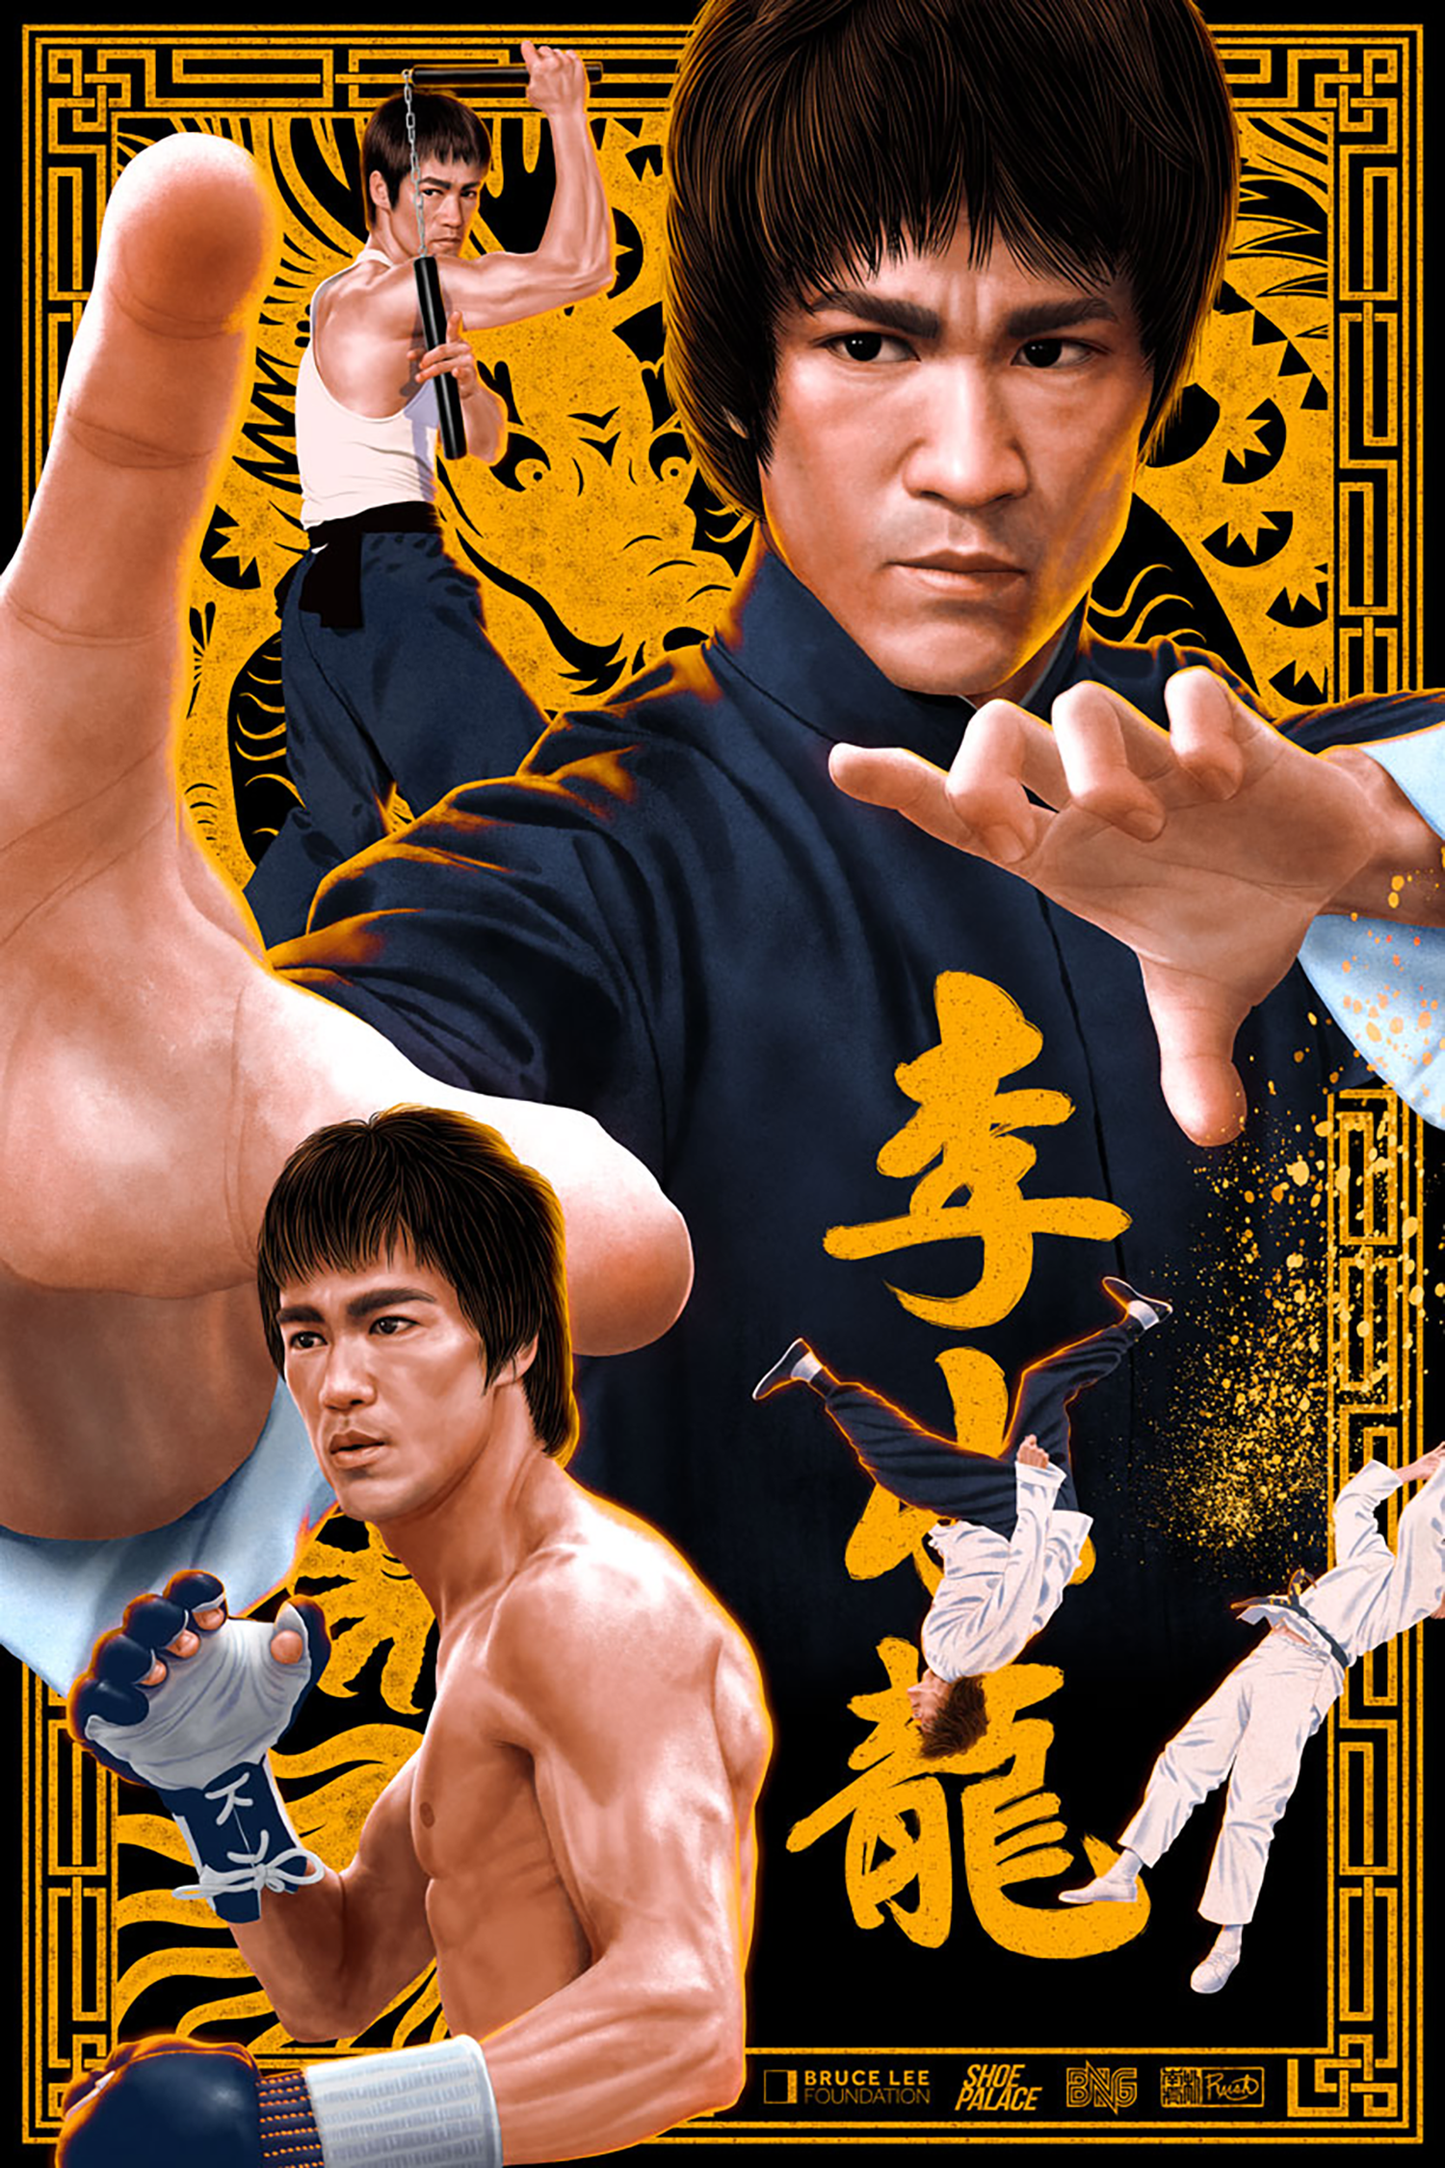 Jason Raish "Bruce Lee" Variant